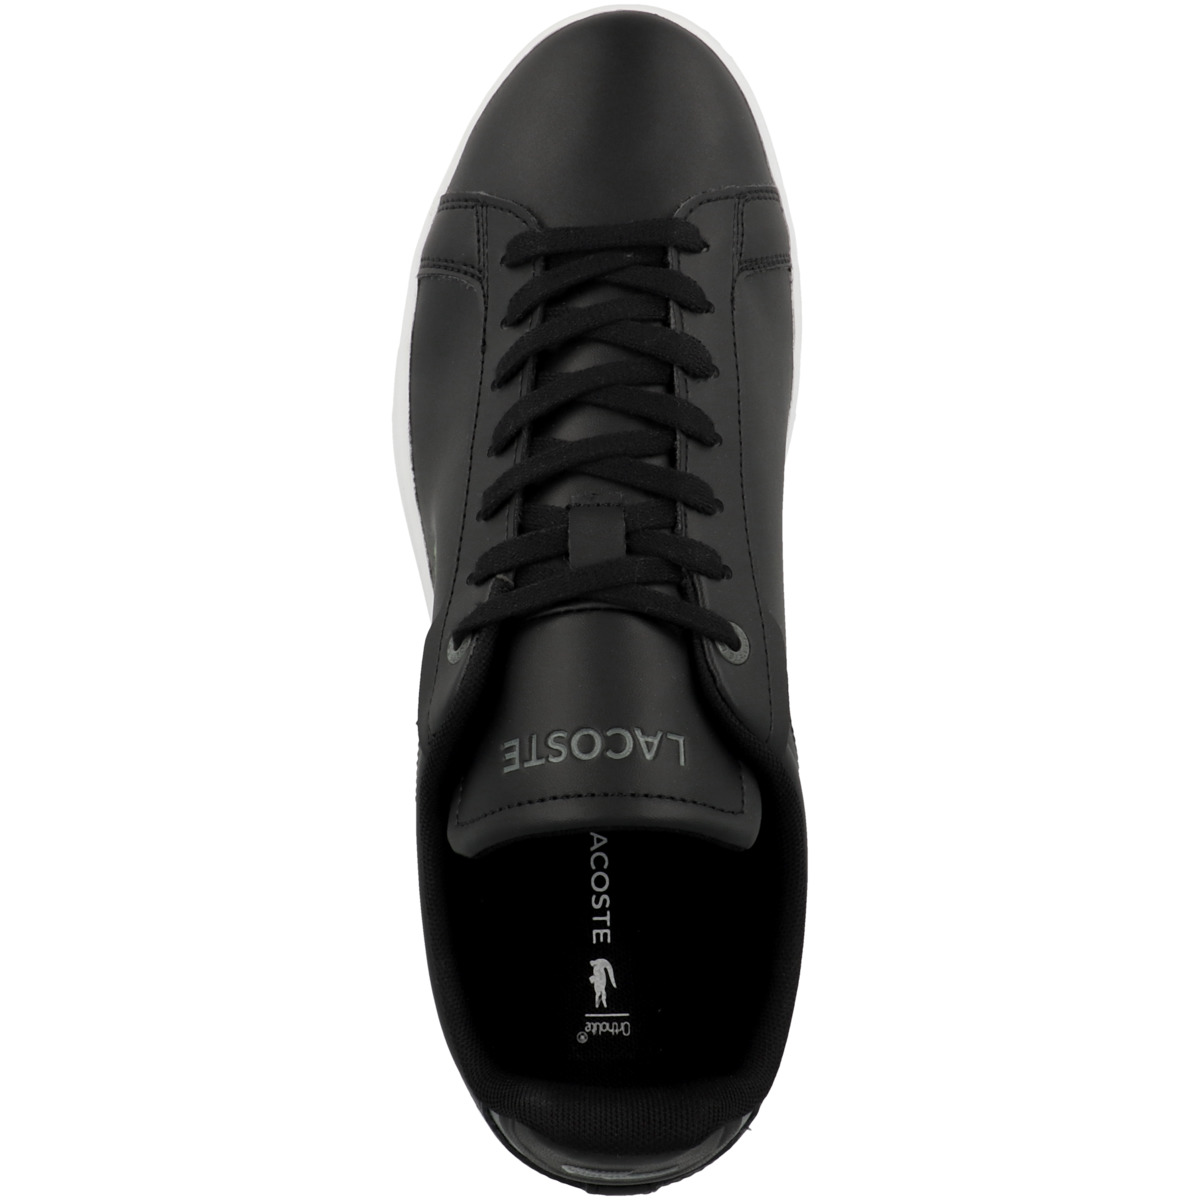 Lacoste Carnaby Pro BL Leather Tonal Sneaker schwarz